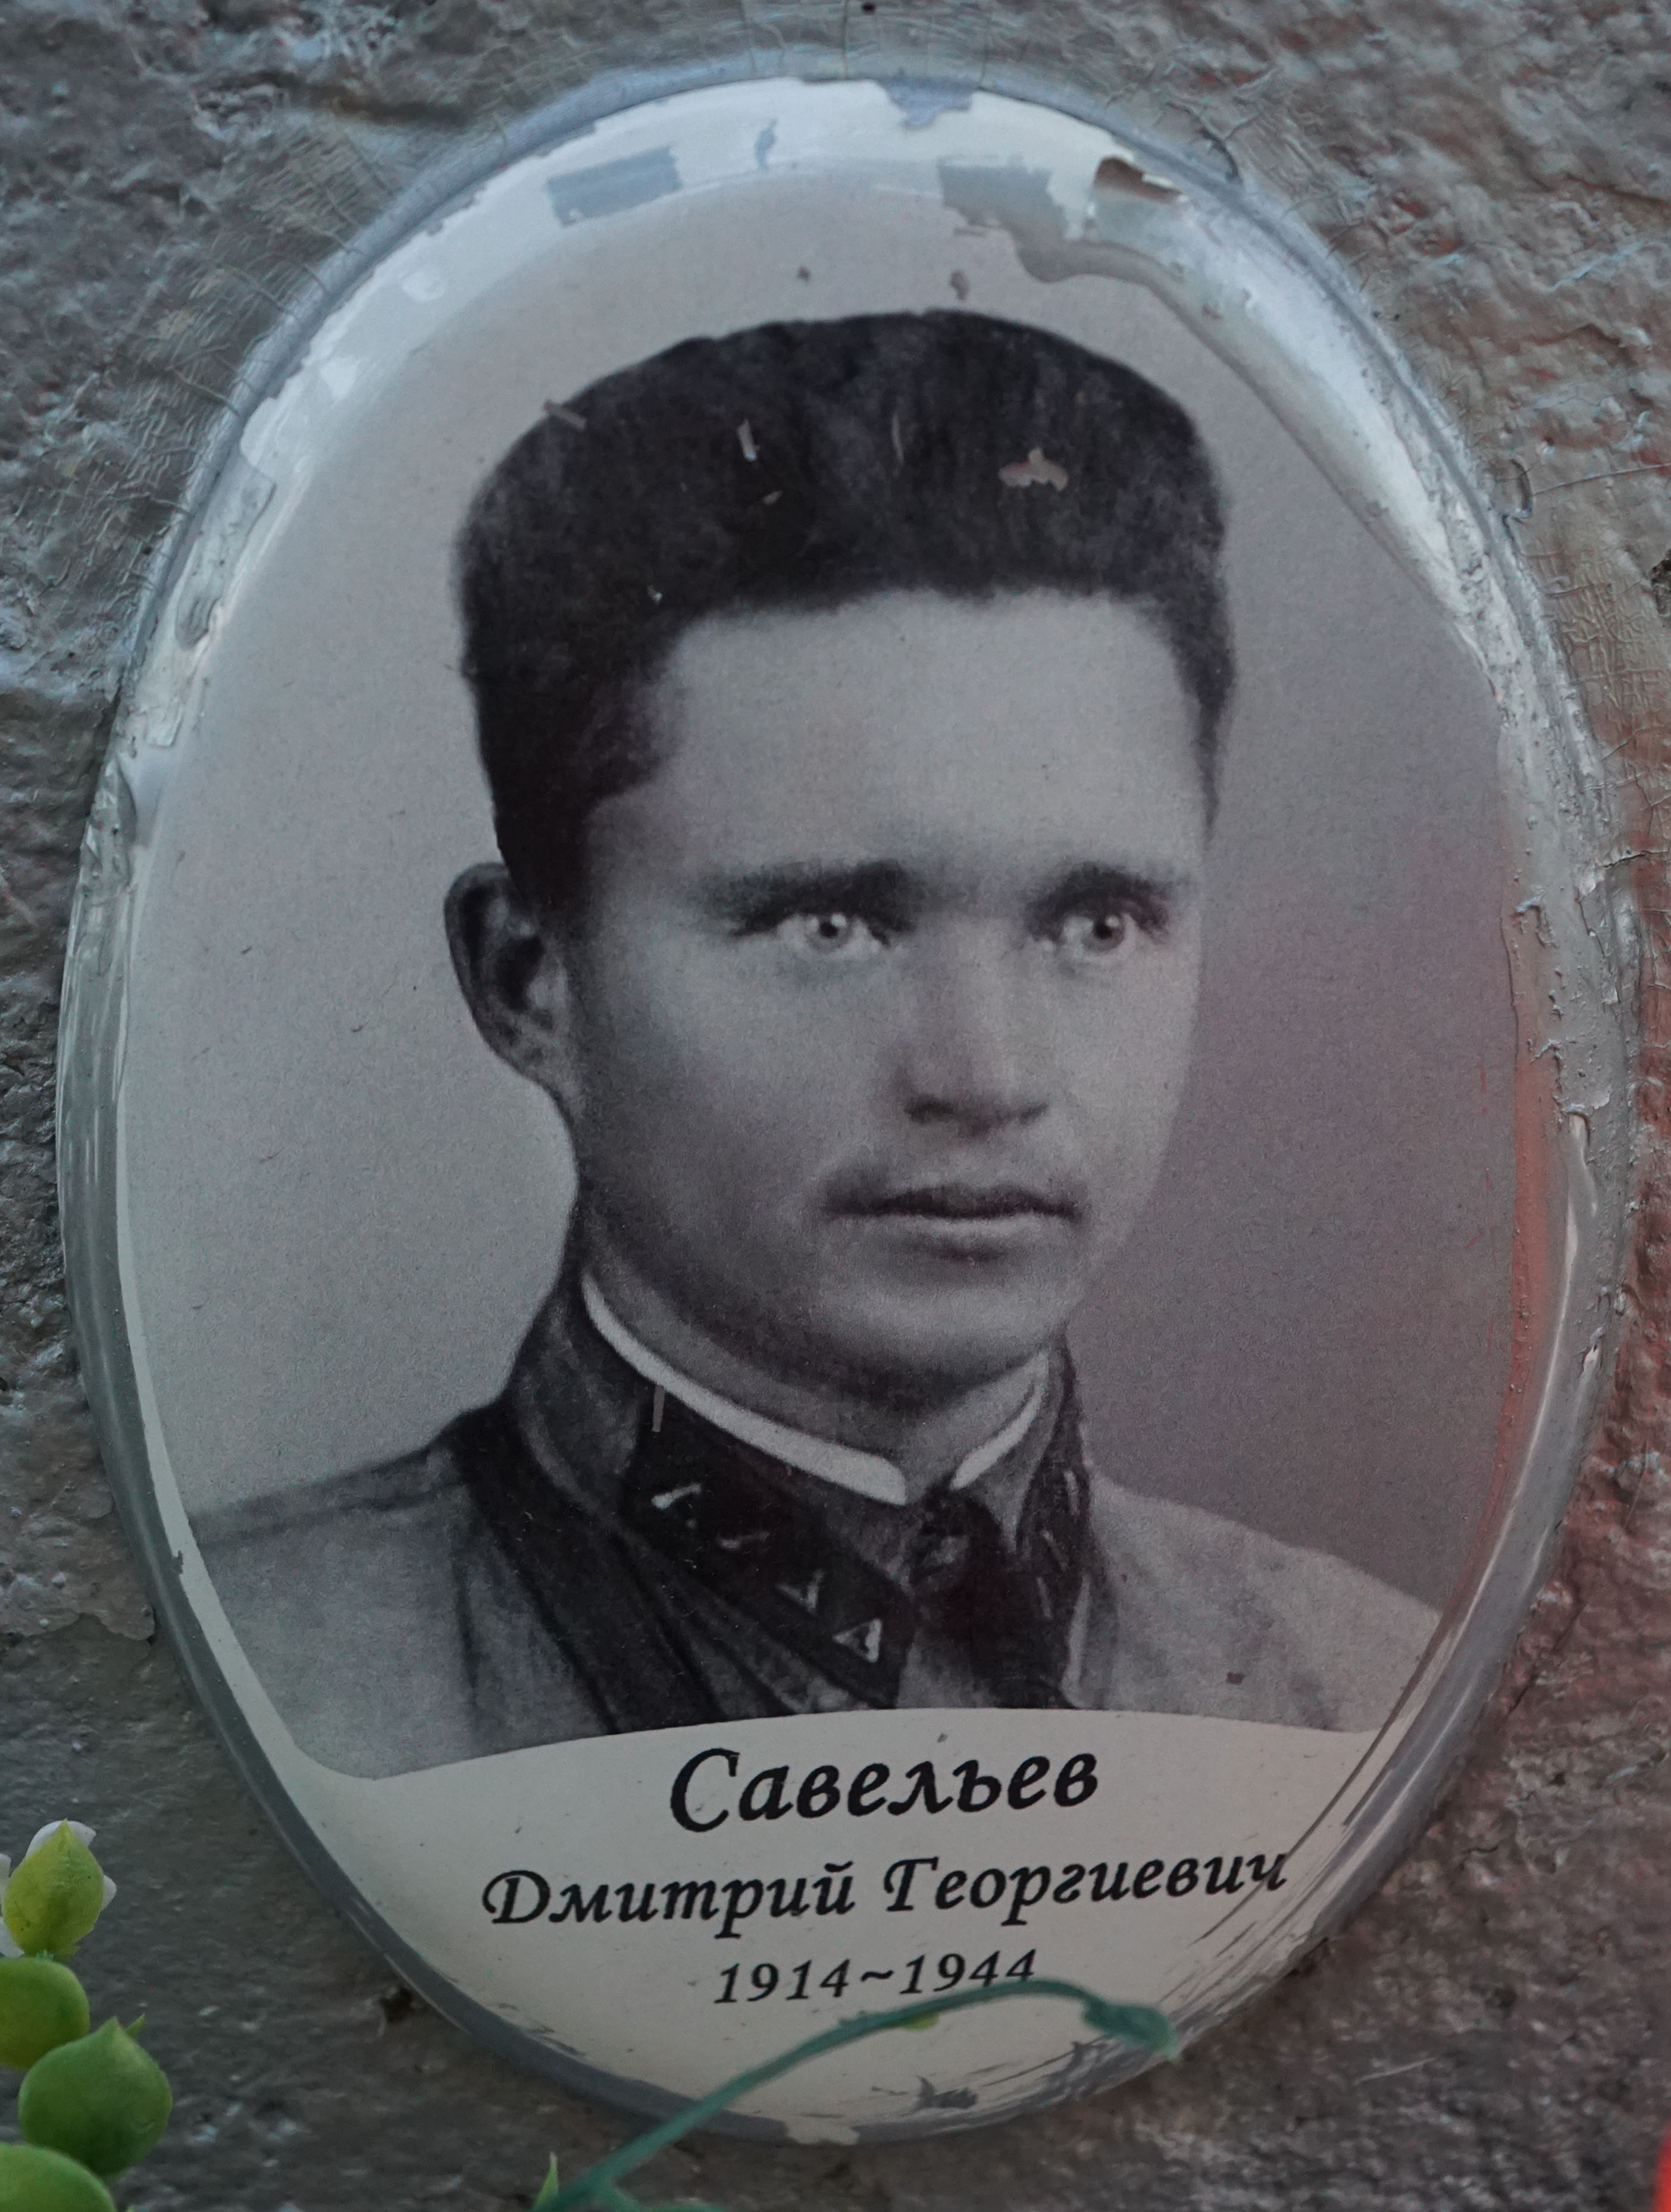 Дмитрий Георгиевич Савельев (1914-1944)